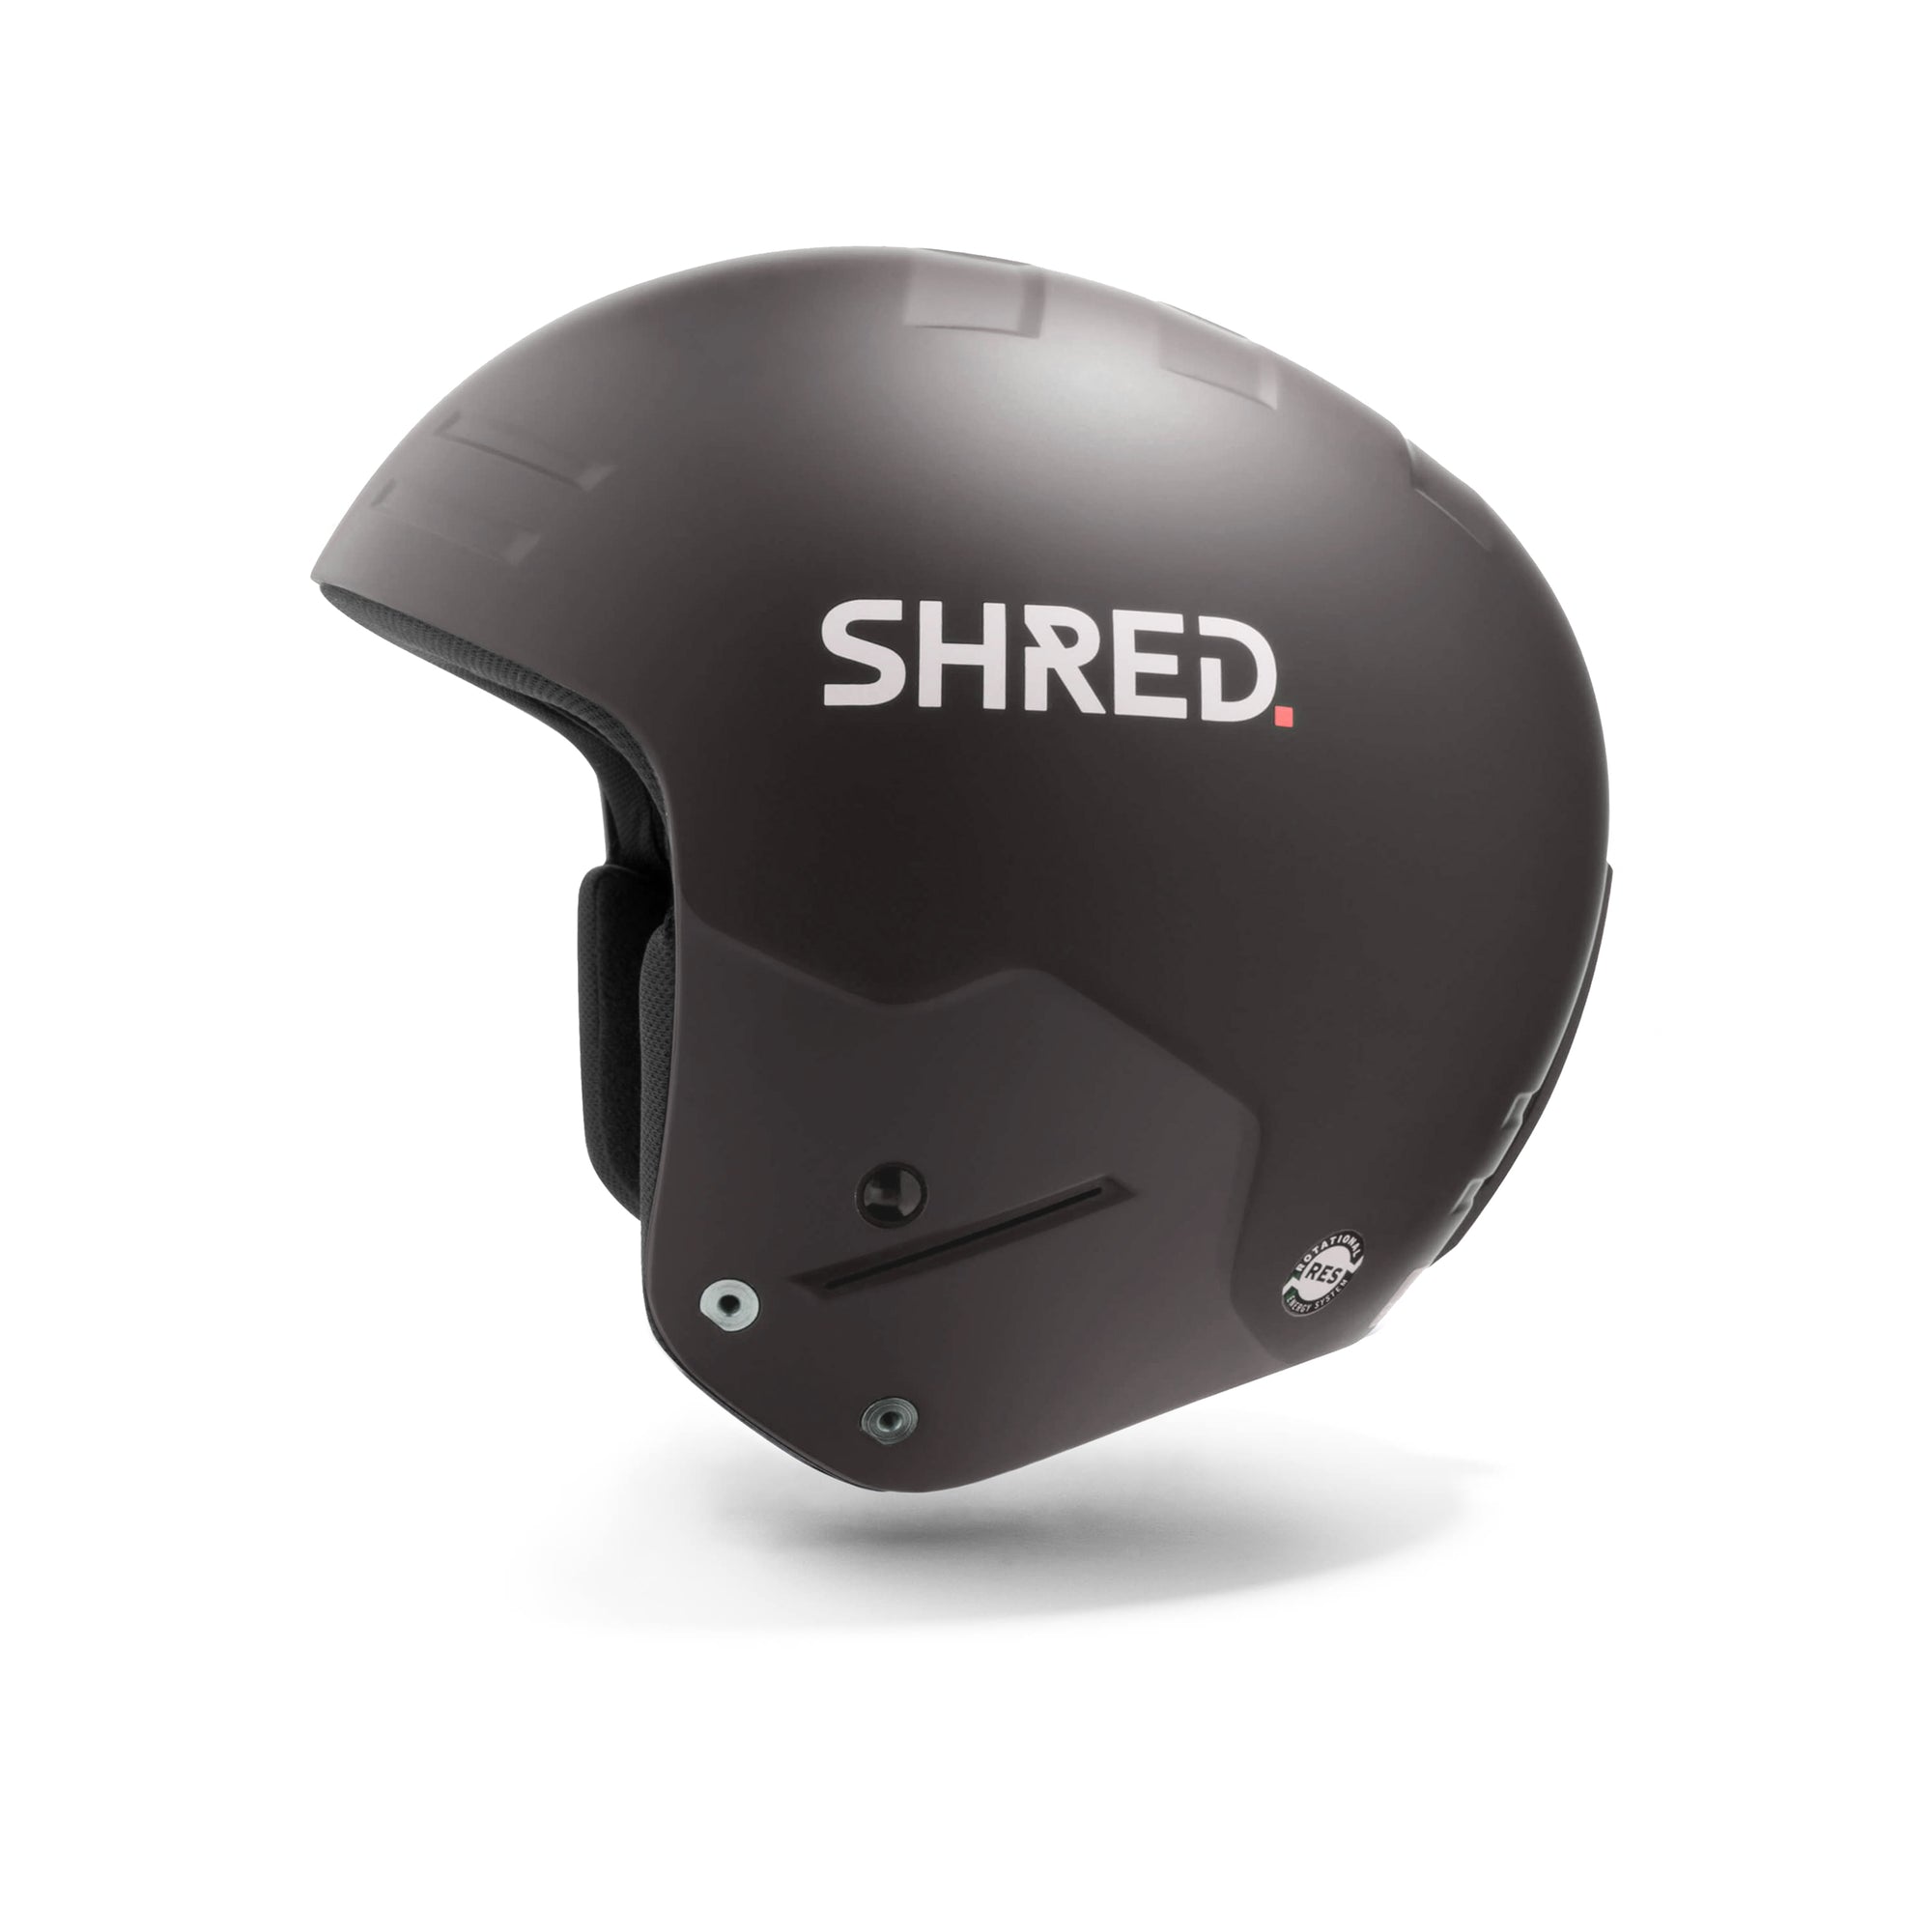 Basher - Ski Helmets|HEBSRK22M,HEBSRK22S